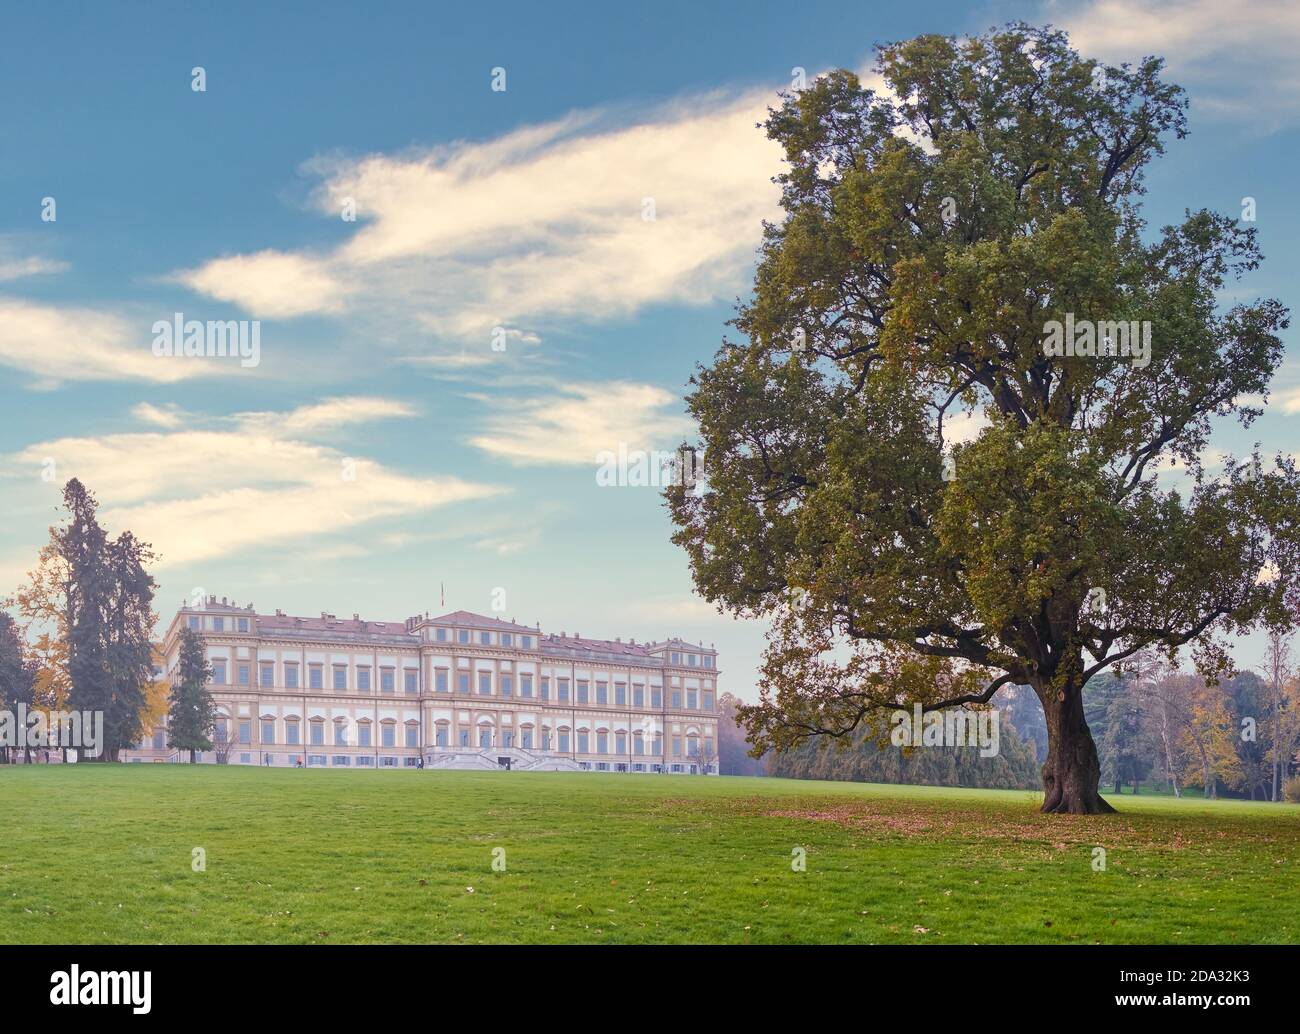 La Villa Reale historique de Monza, en Italie, entourée d'un magnifique arbre lors d'une merveilleuse journée d'automne Banque D'Images